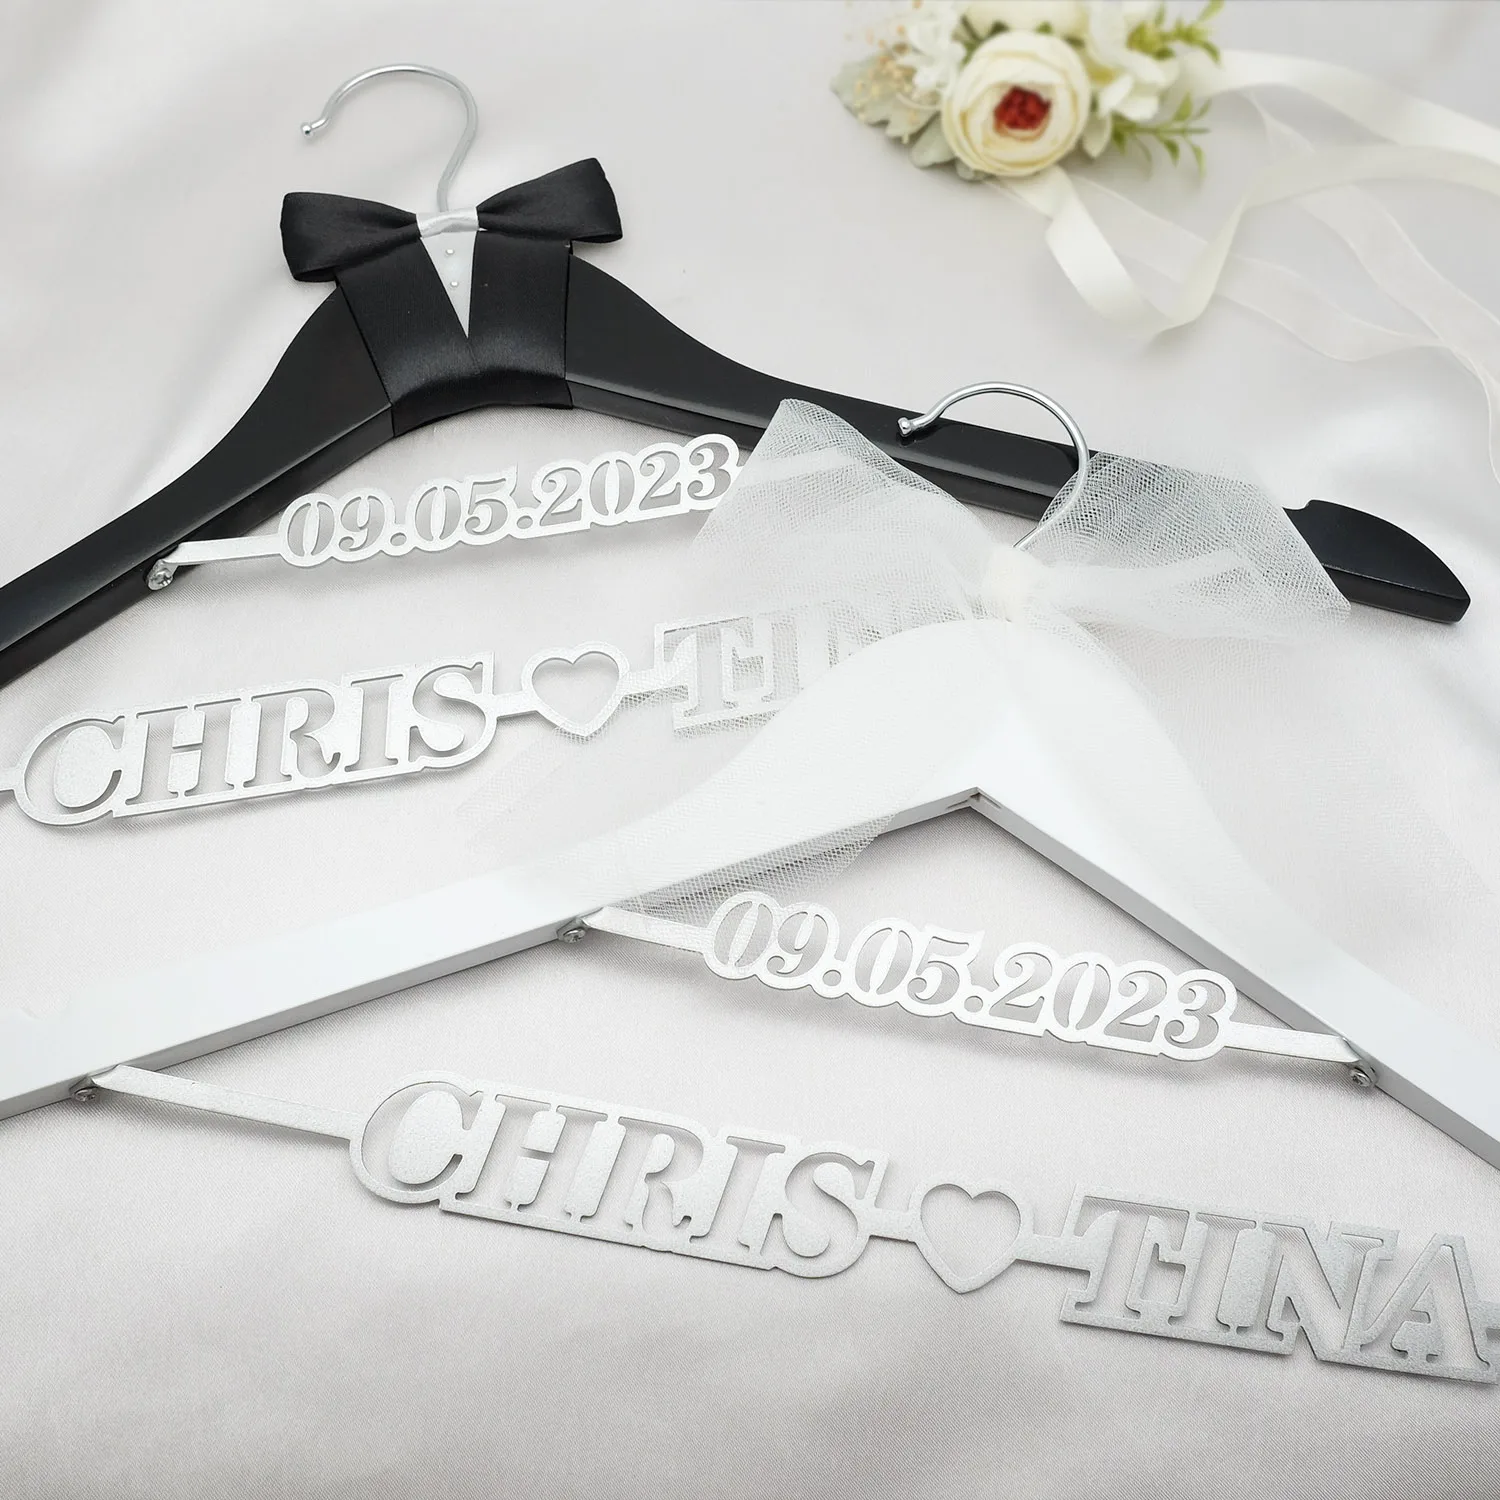 

Вешалка для свидания, вешалка для подарка невесты, Свадебная и Свадебная Вешалка с индивидуальным именем на заказ, искусственная вешалка для свадебного платья